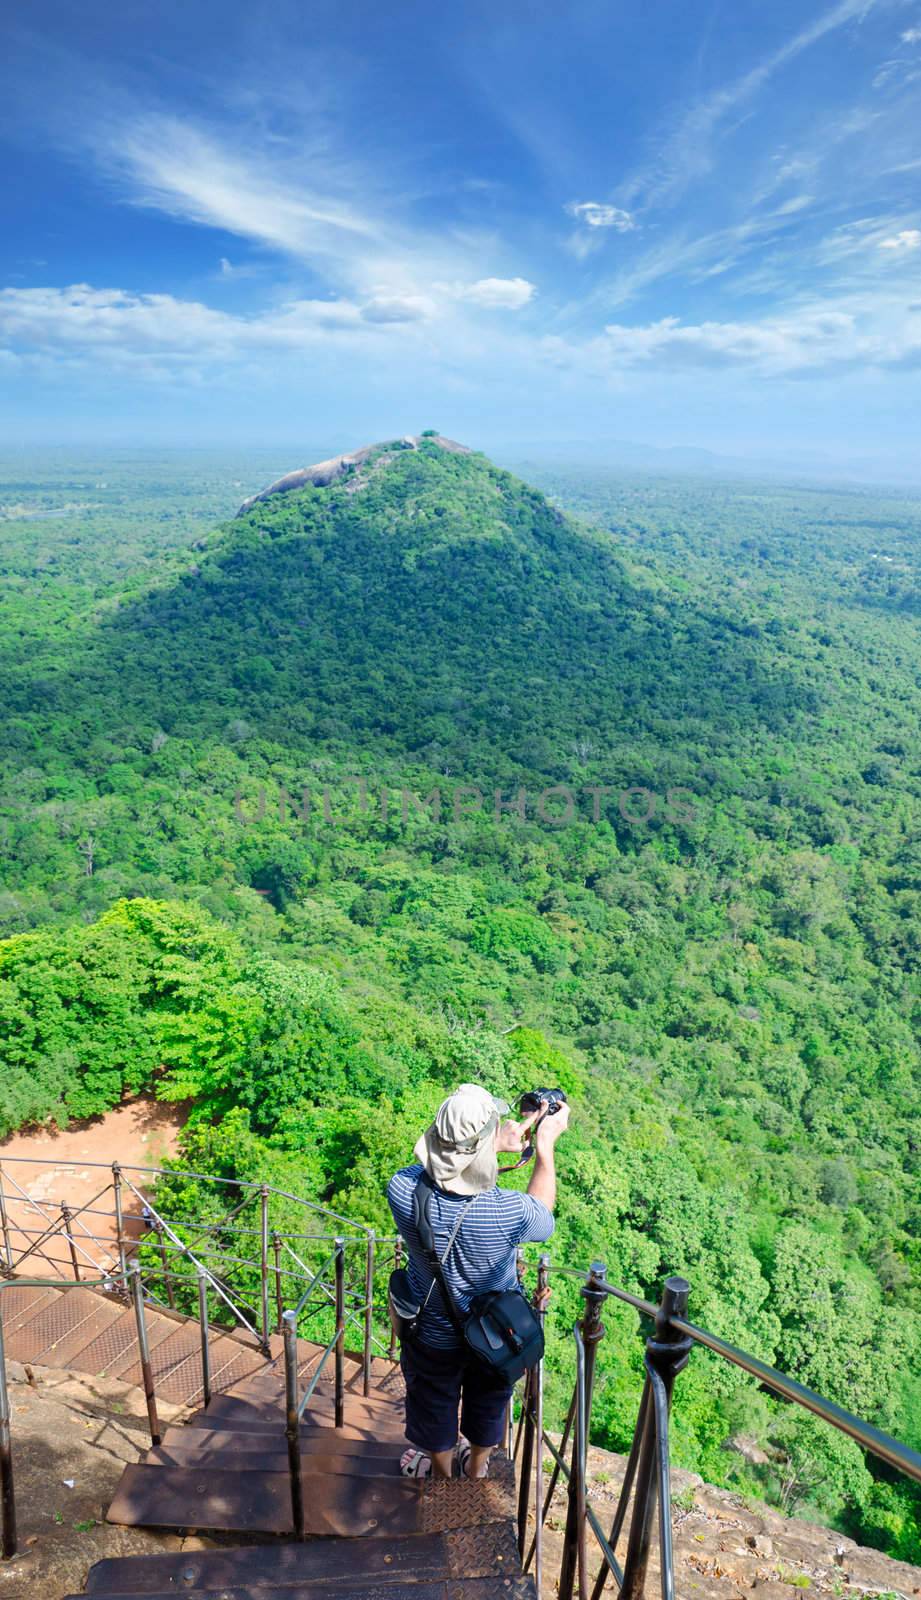 View from mount Sigiriya, Sri Lanka (Ceylon) with tourist on sho by Sergieiev